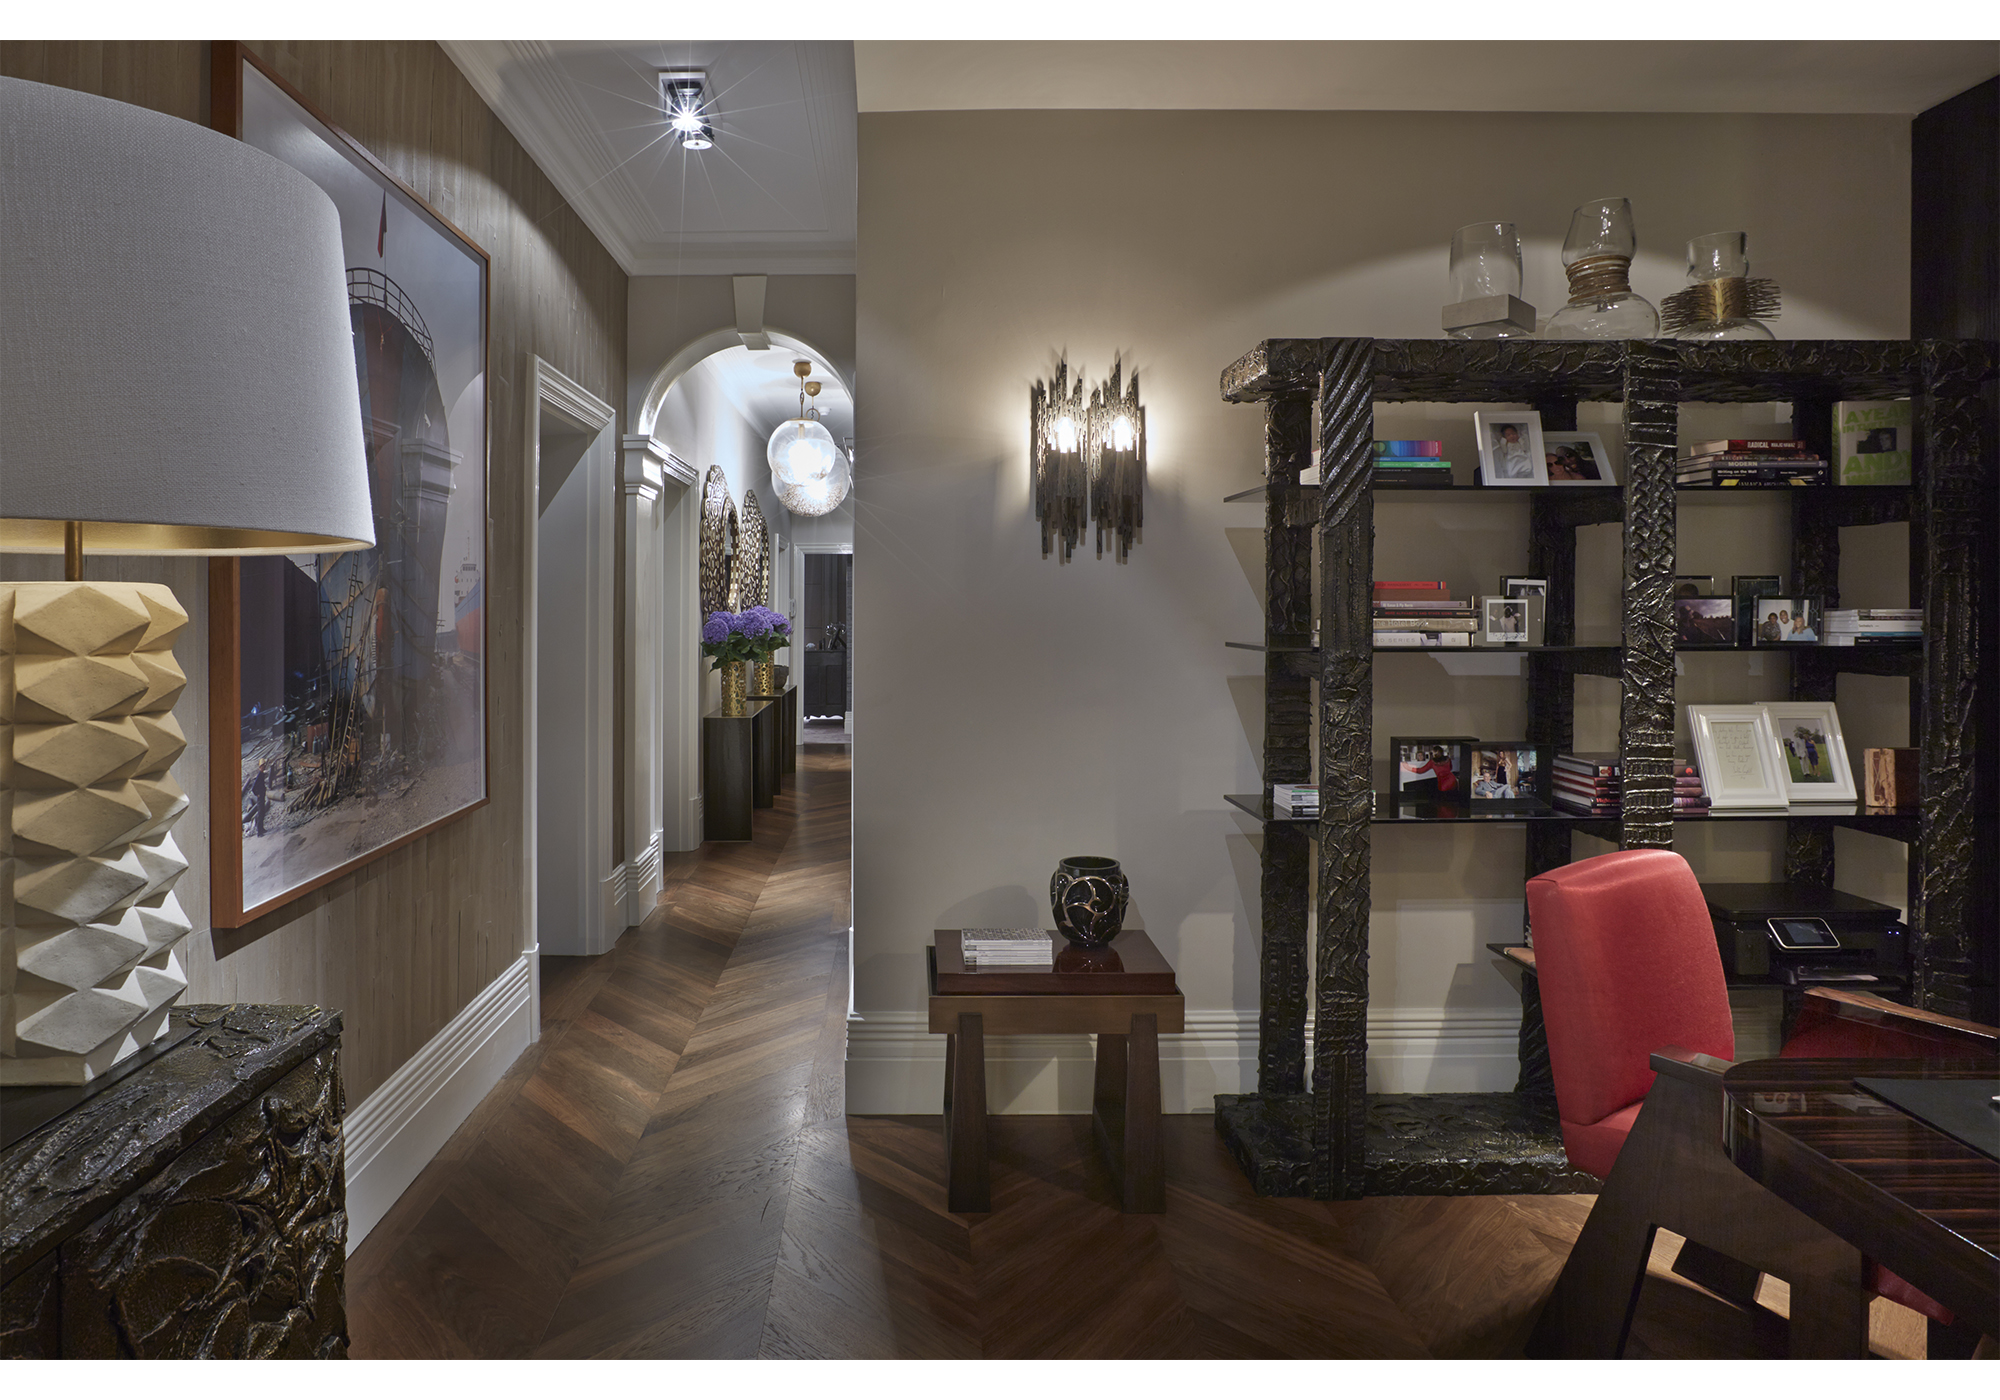 Meet Fiona Barratt Interiors - A Brilliant Interior Design Firm